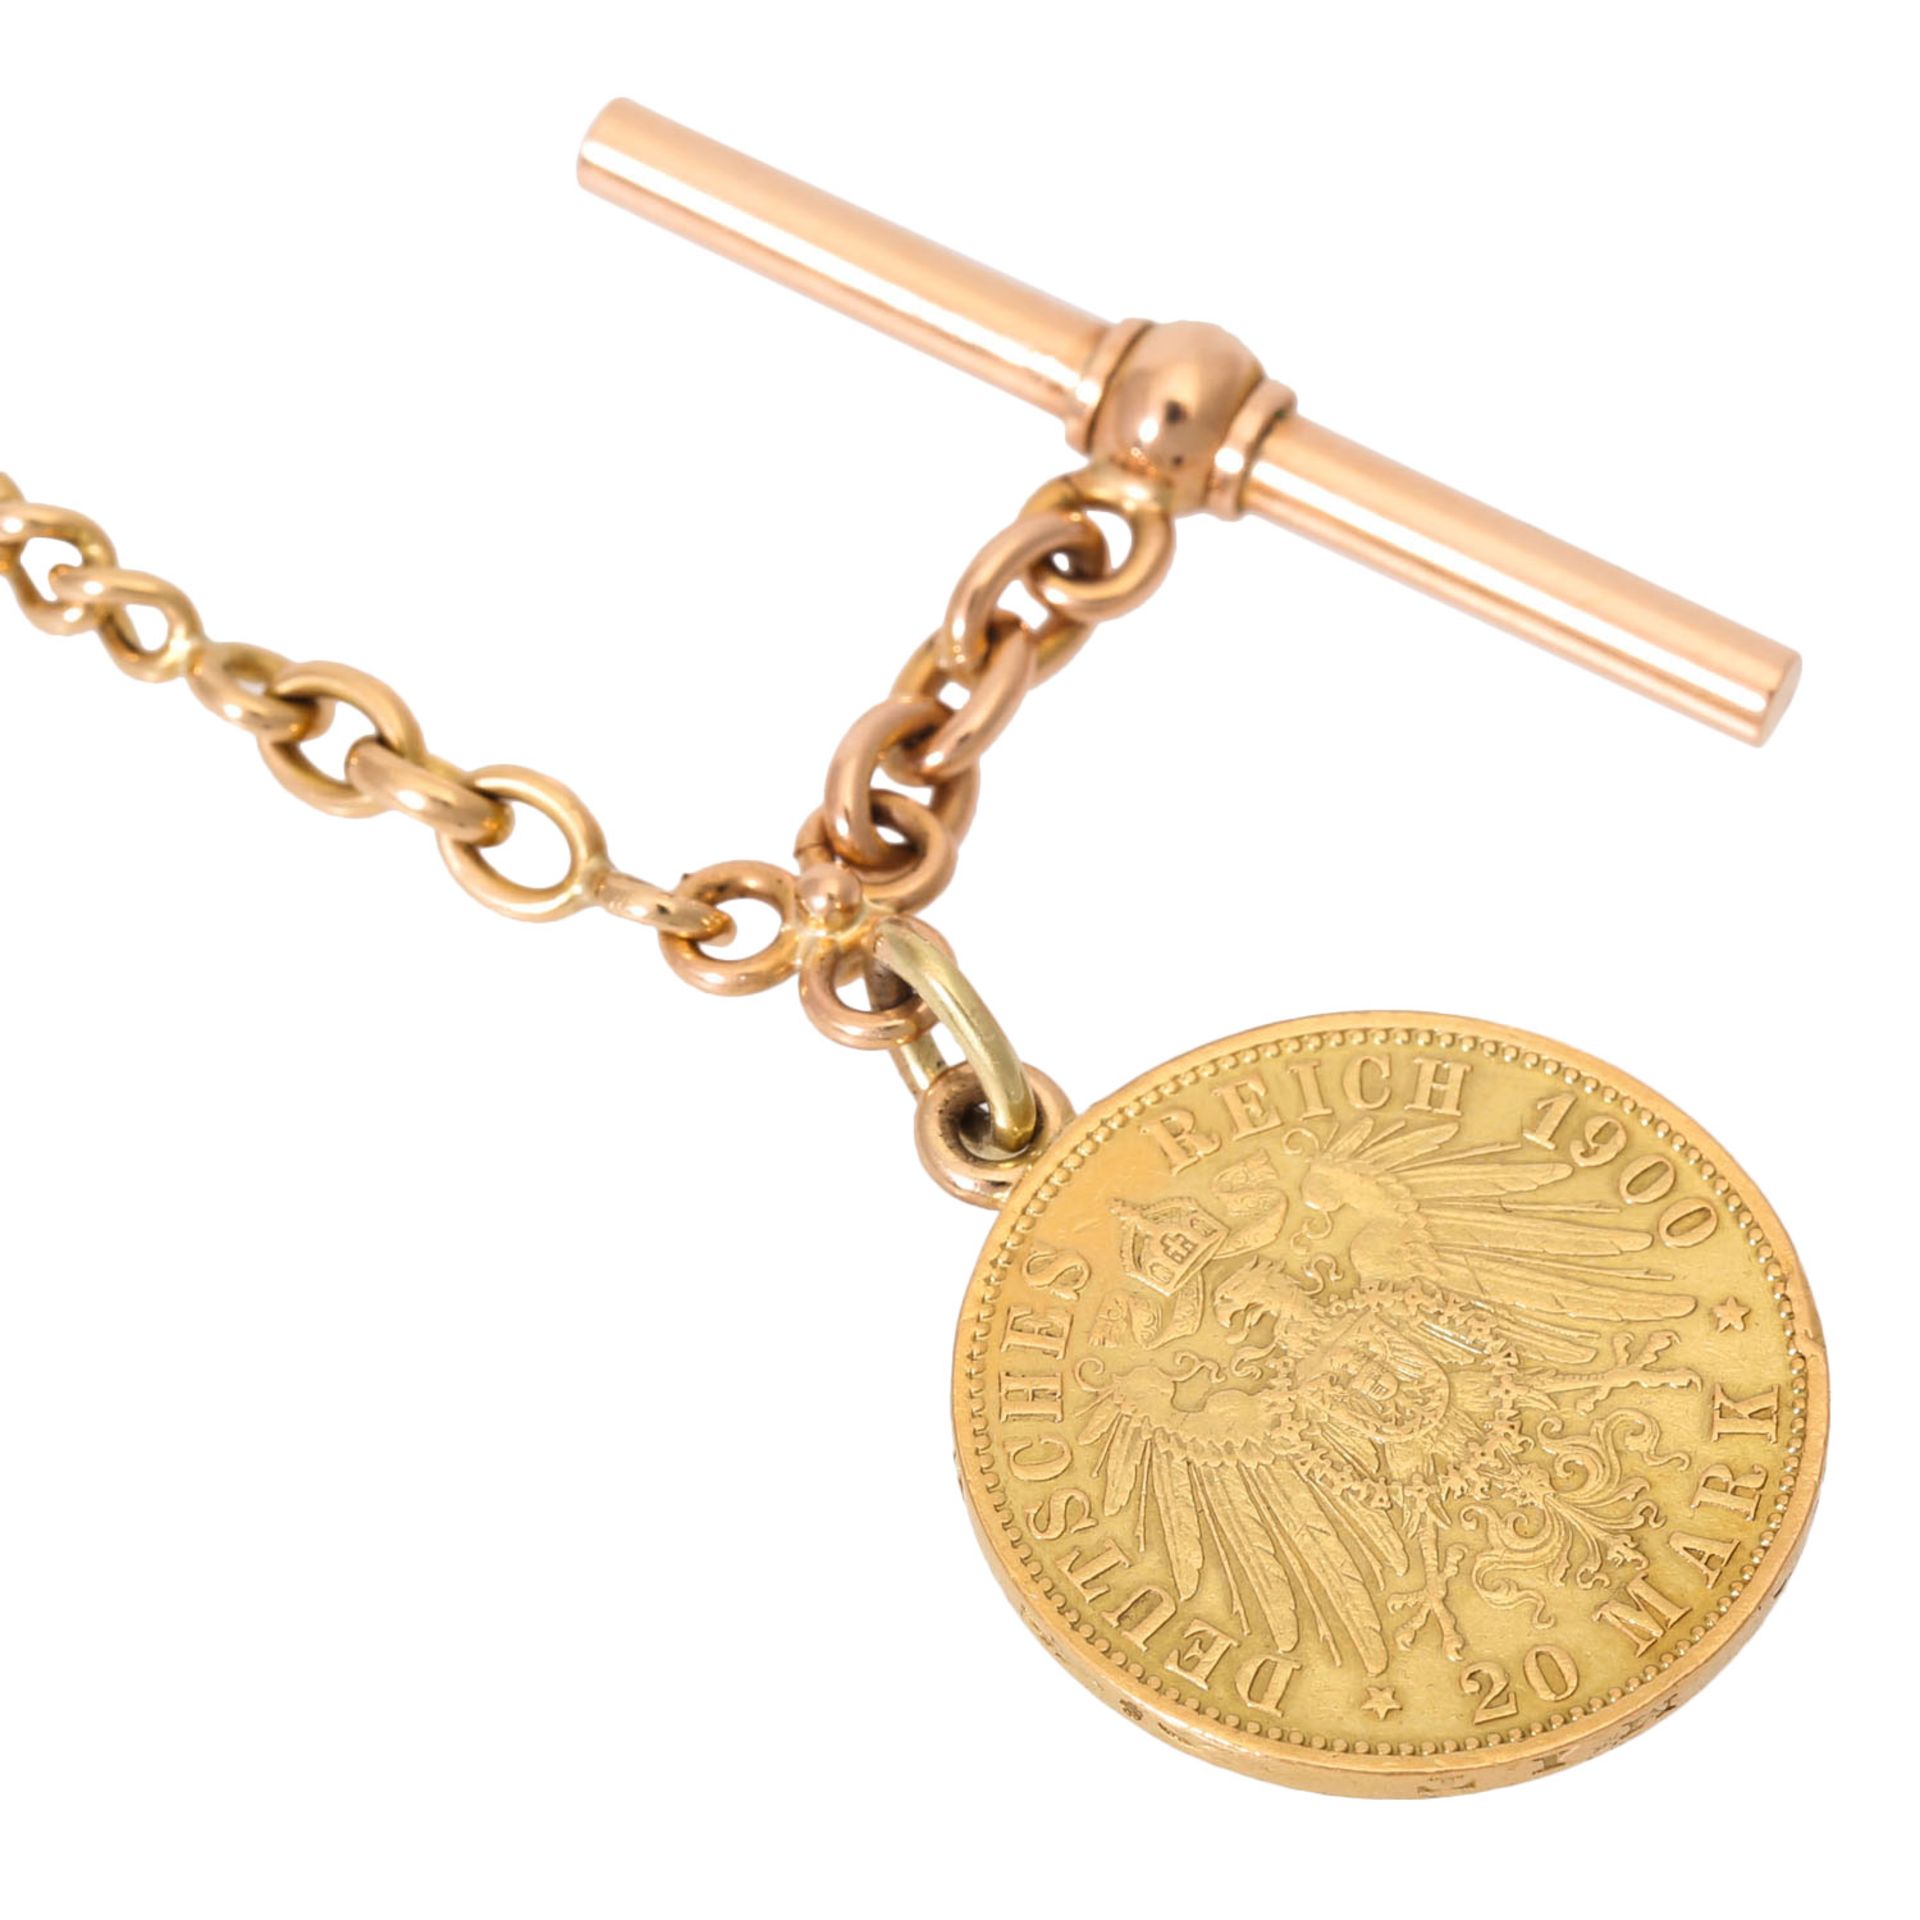 Hochwertige Taschenuhrkette mit Goldmünze "20 Mark Preussen". - Bild 3 aus 5